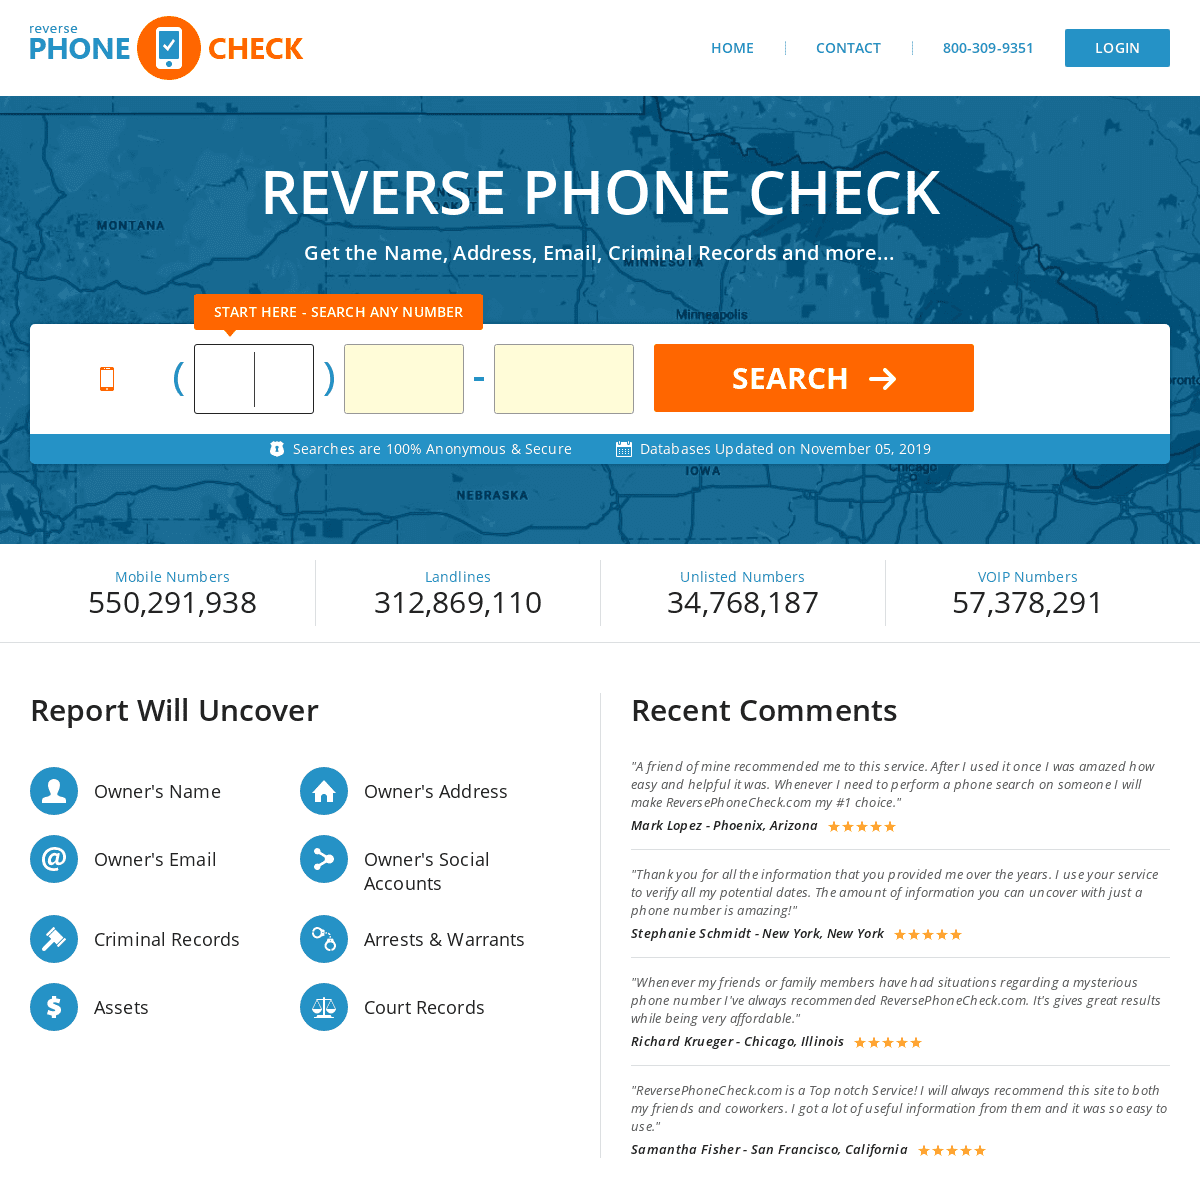 A complete backup of reversephonecheck.com